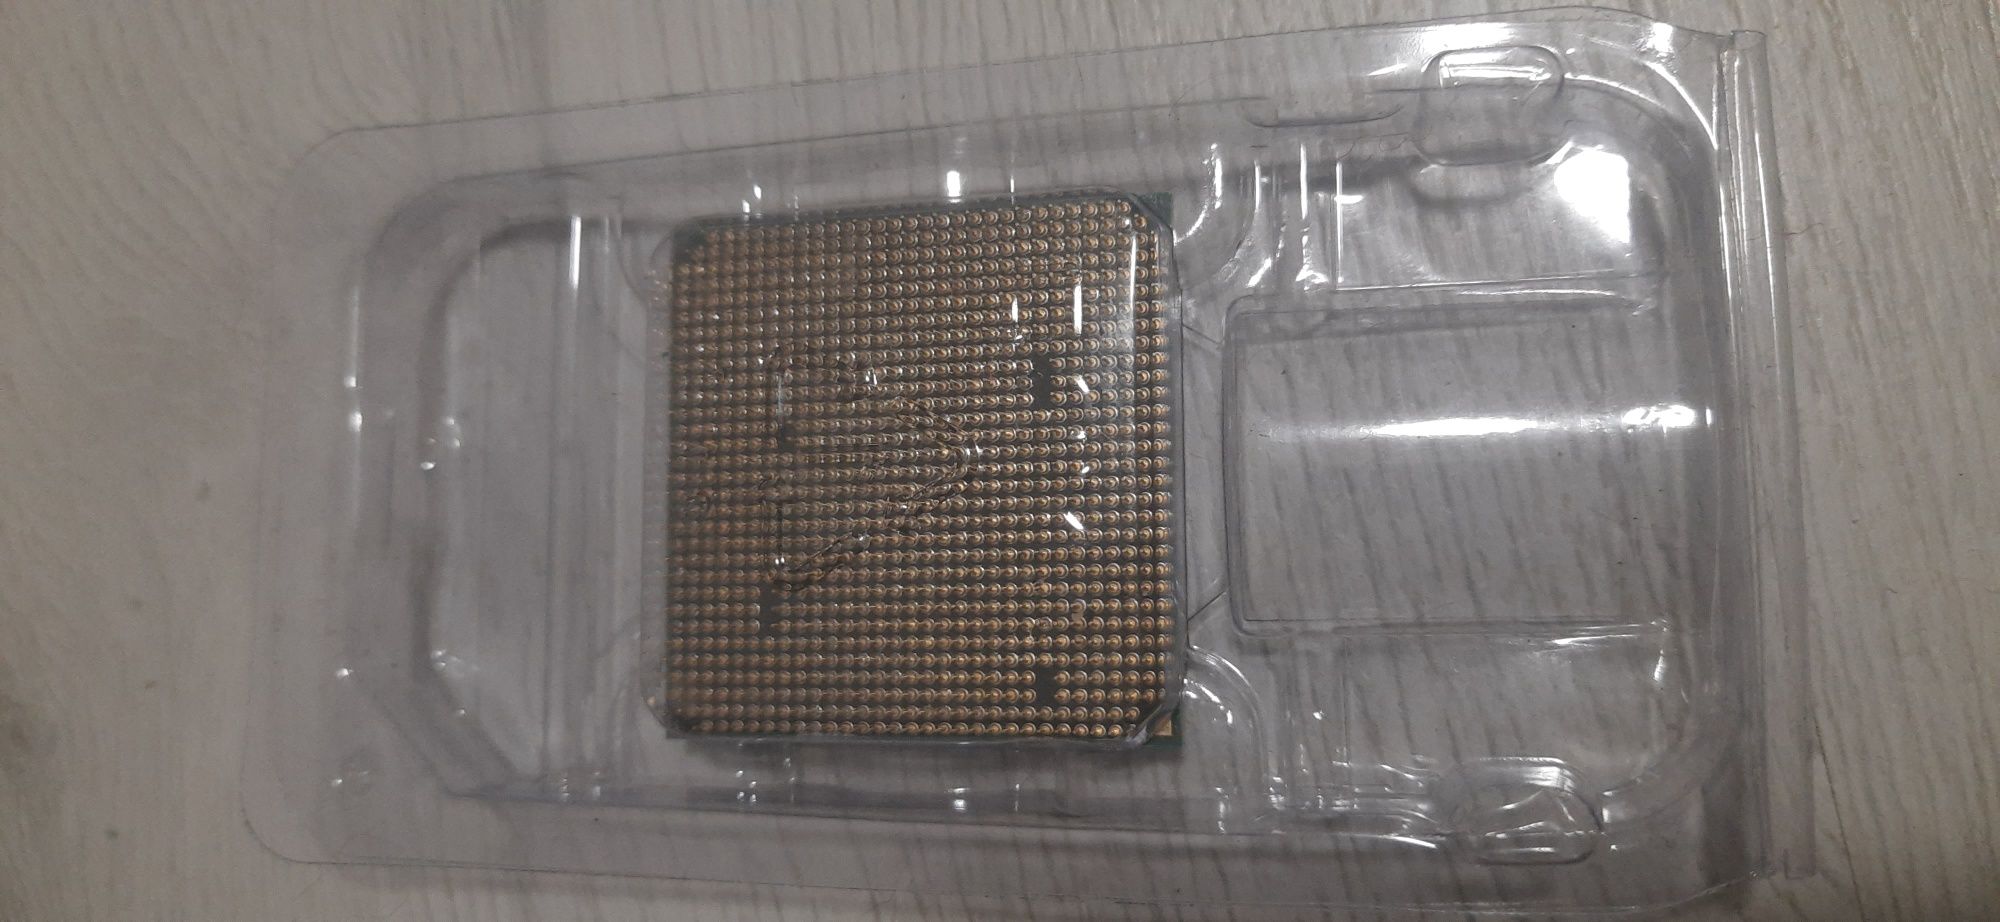 Процесор amd phenom ll x220 2.8ghz